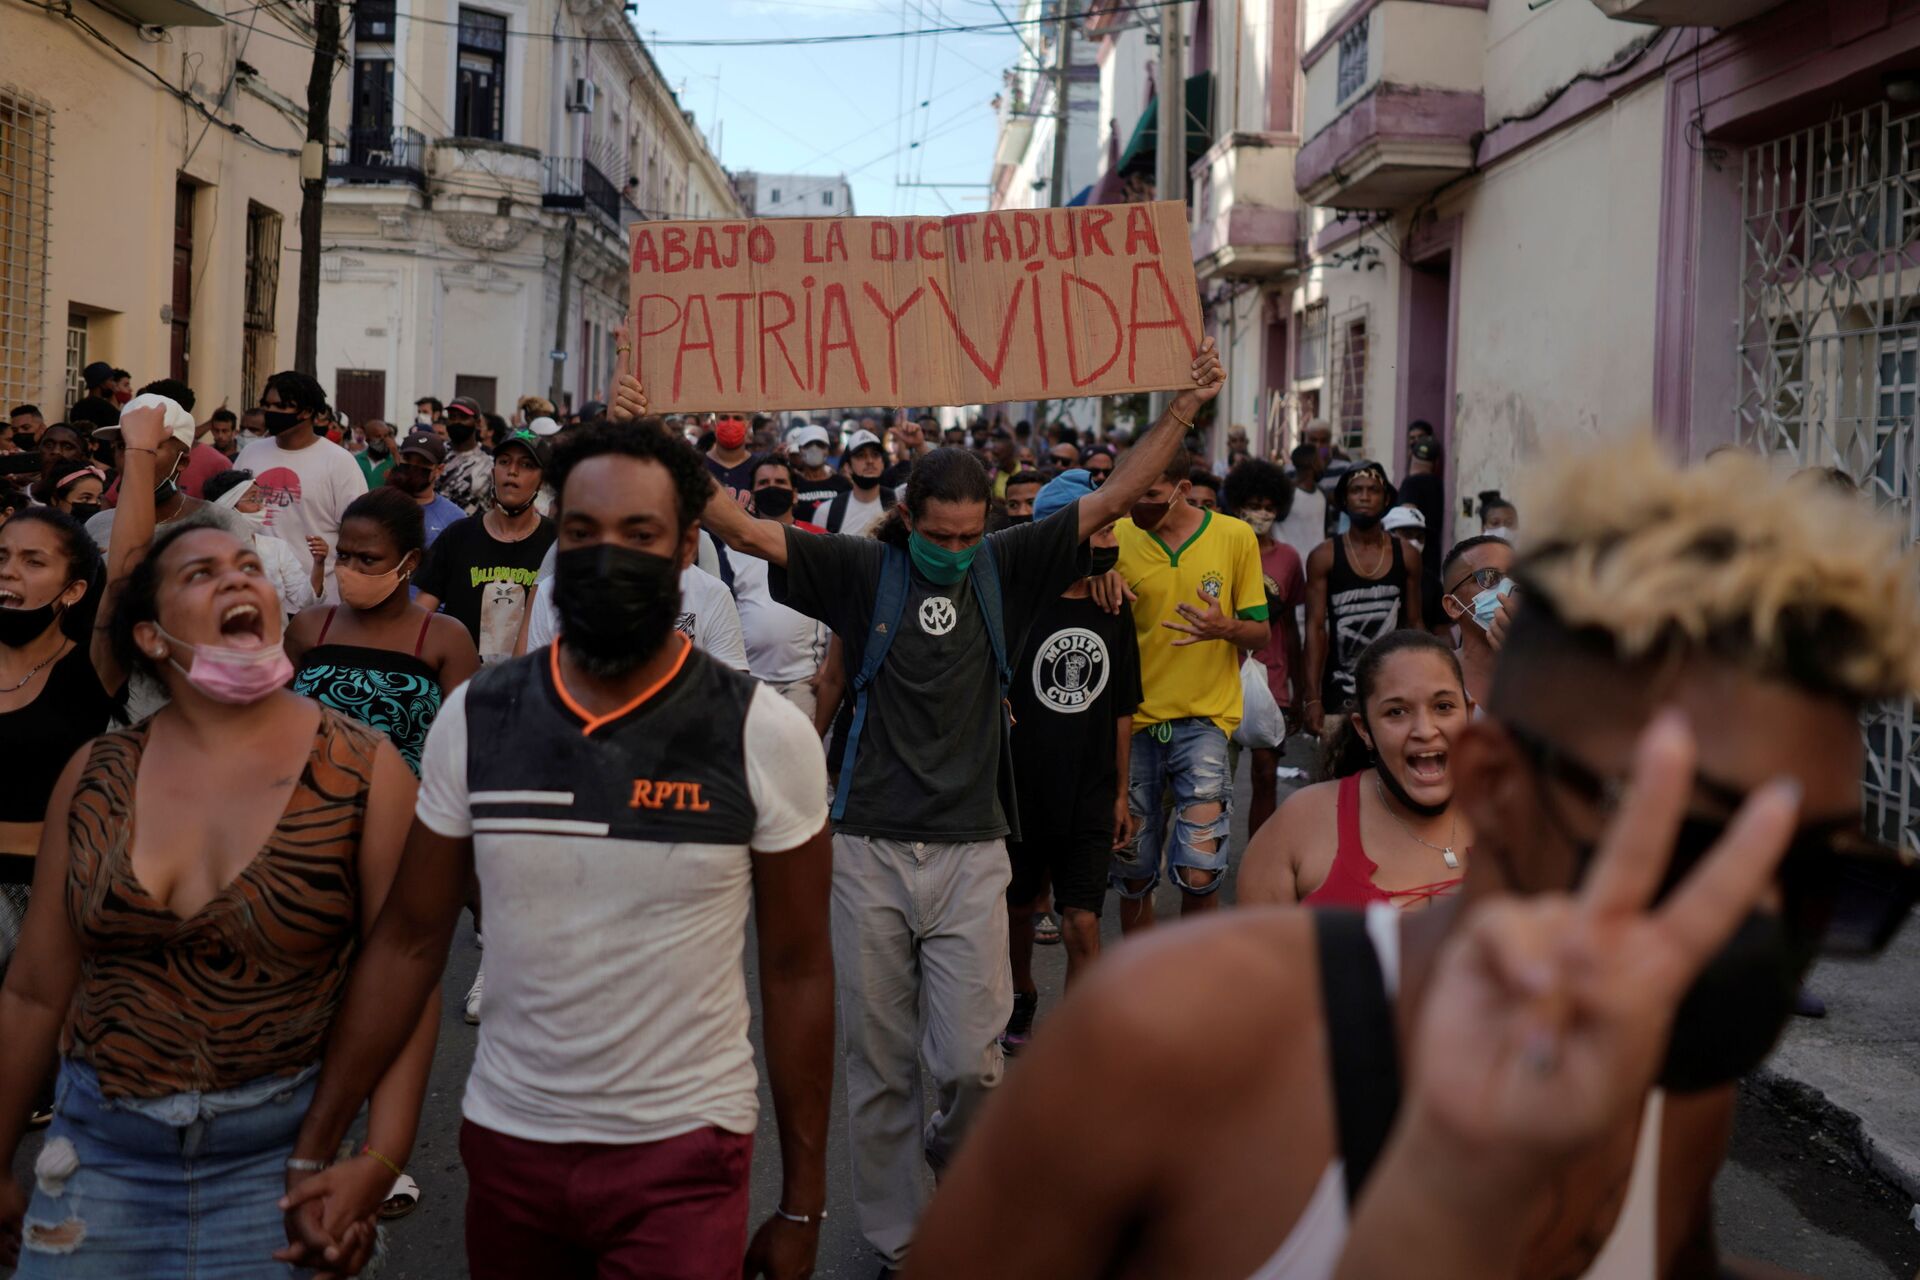 Presidente de Cuba chama manifestações de 'mentira' e diz que imagens dos protestos são 'falsas' - Sputnik Brasil, 1920, 17.07.2021